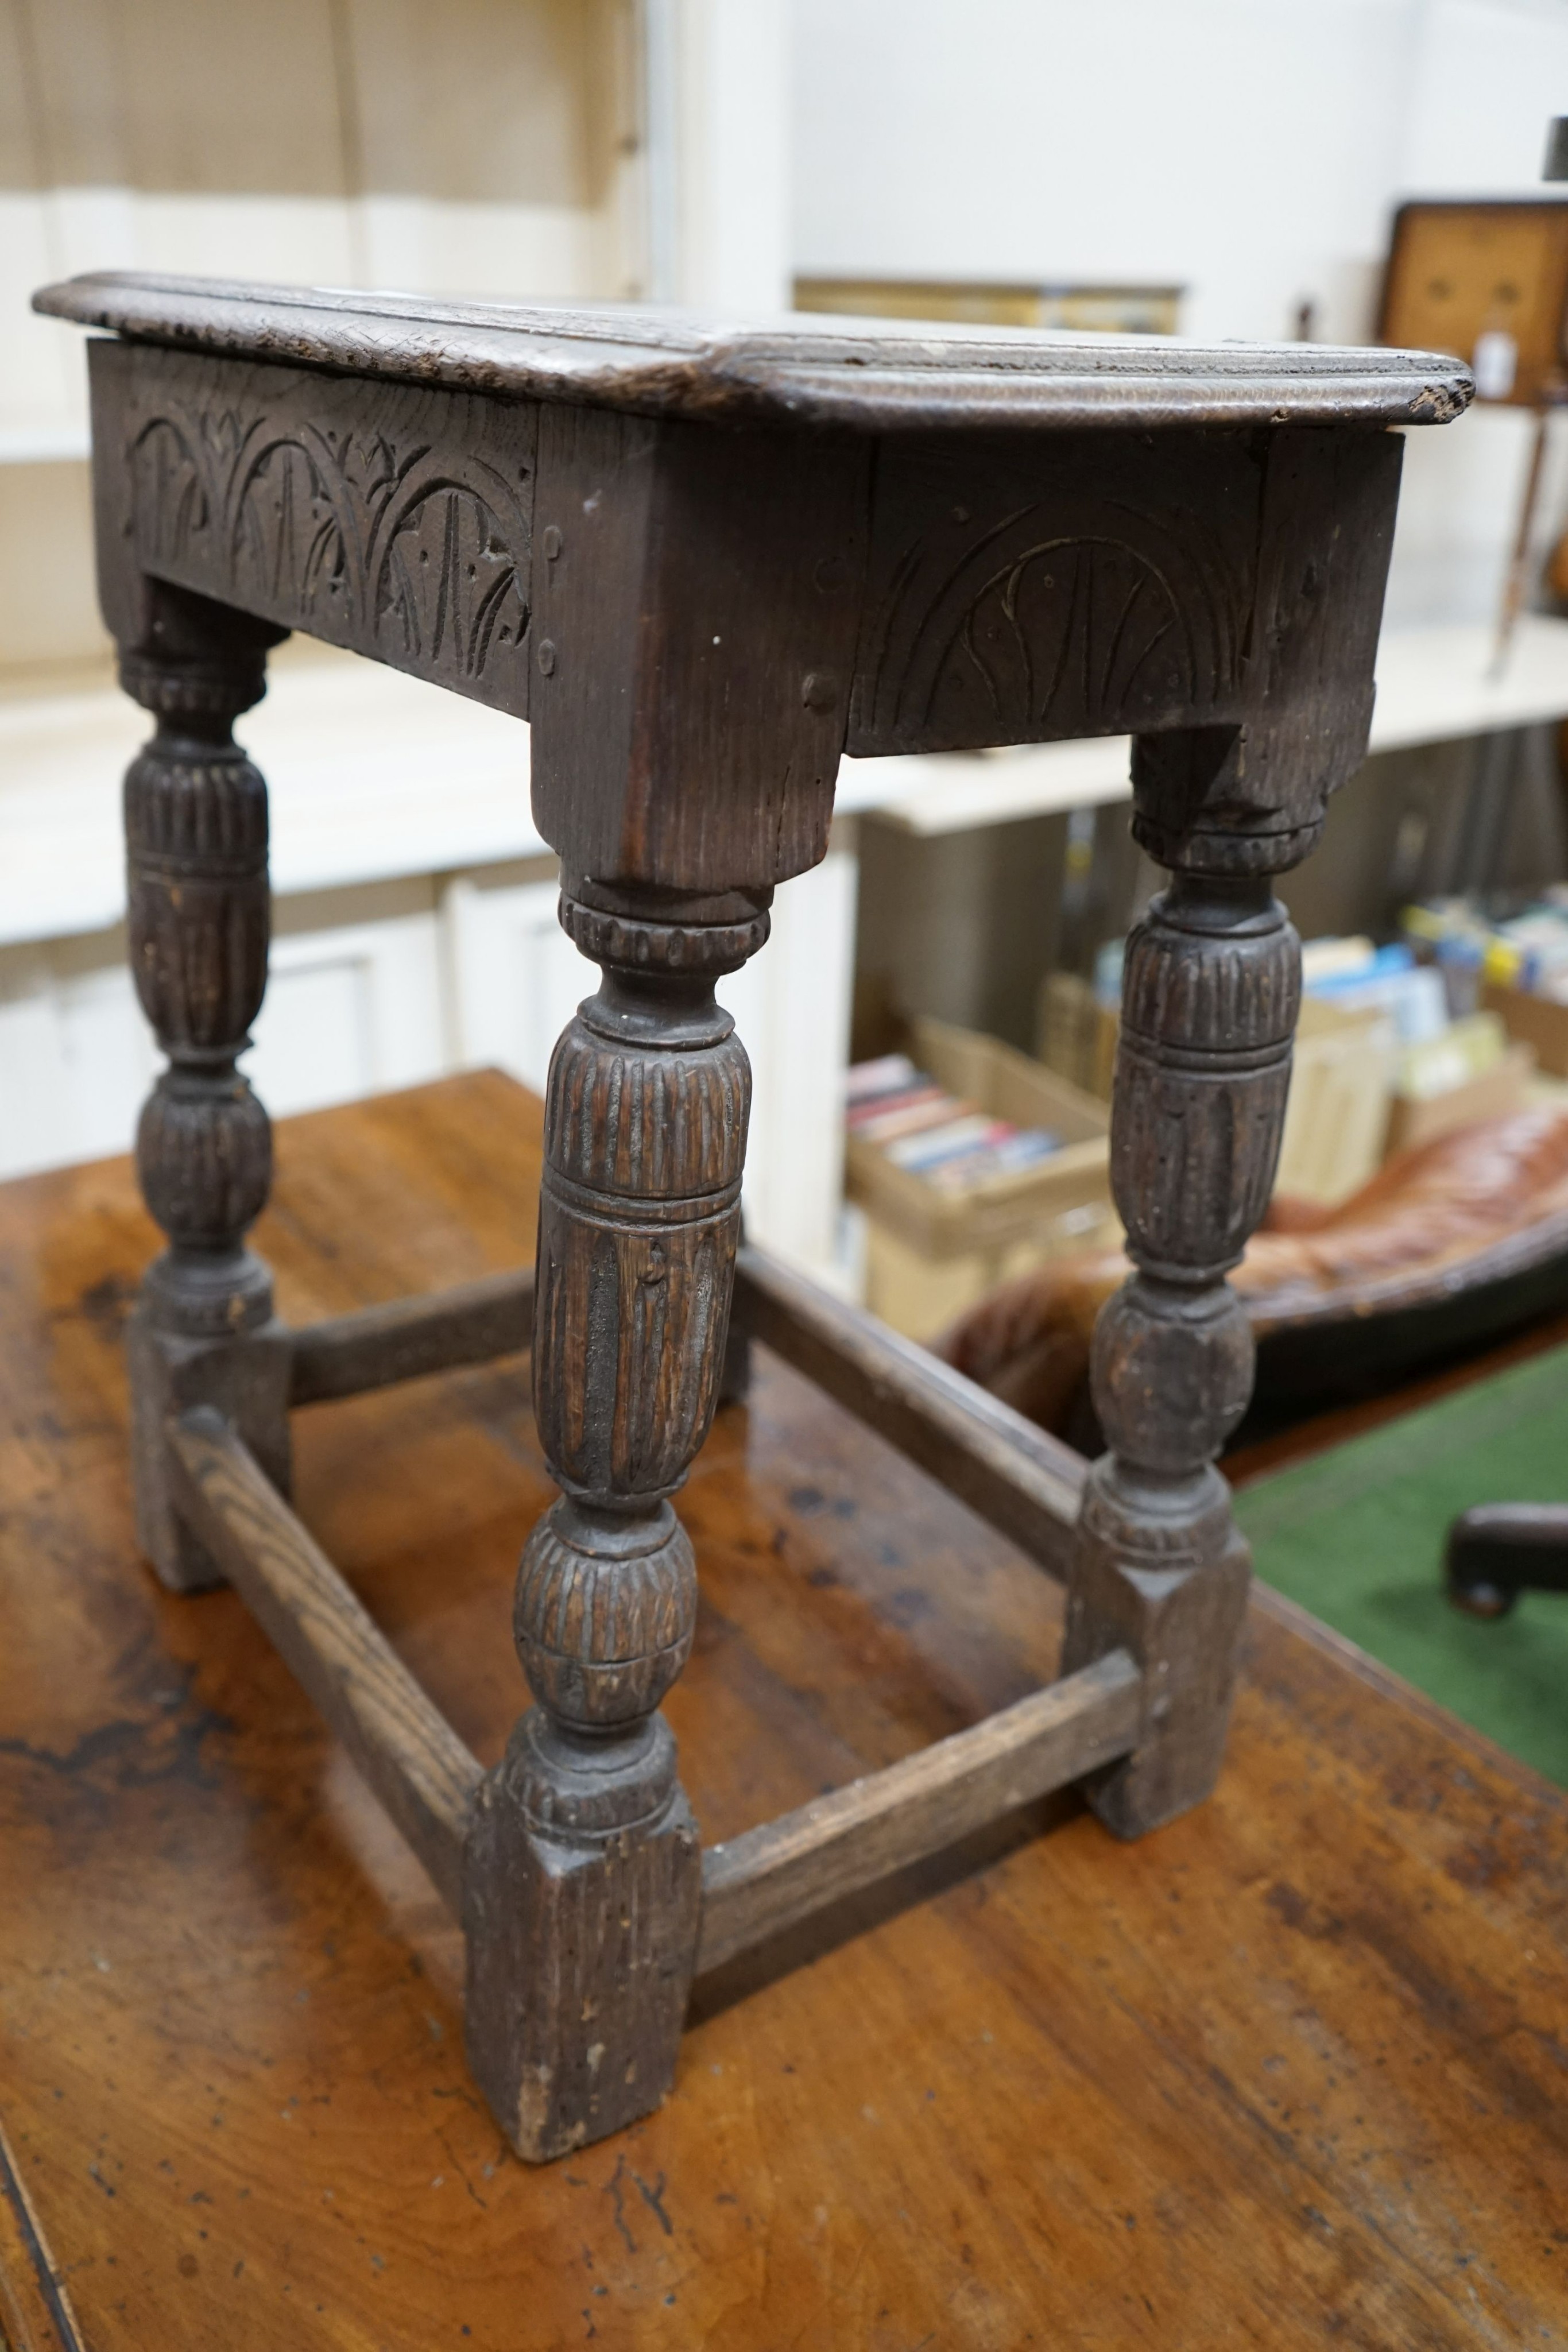 An oak joint stool (wormed), width 45cm, depth 27cm, height 52cm